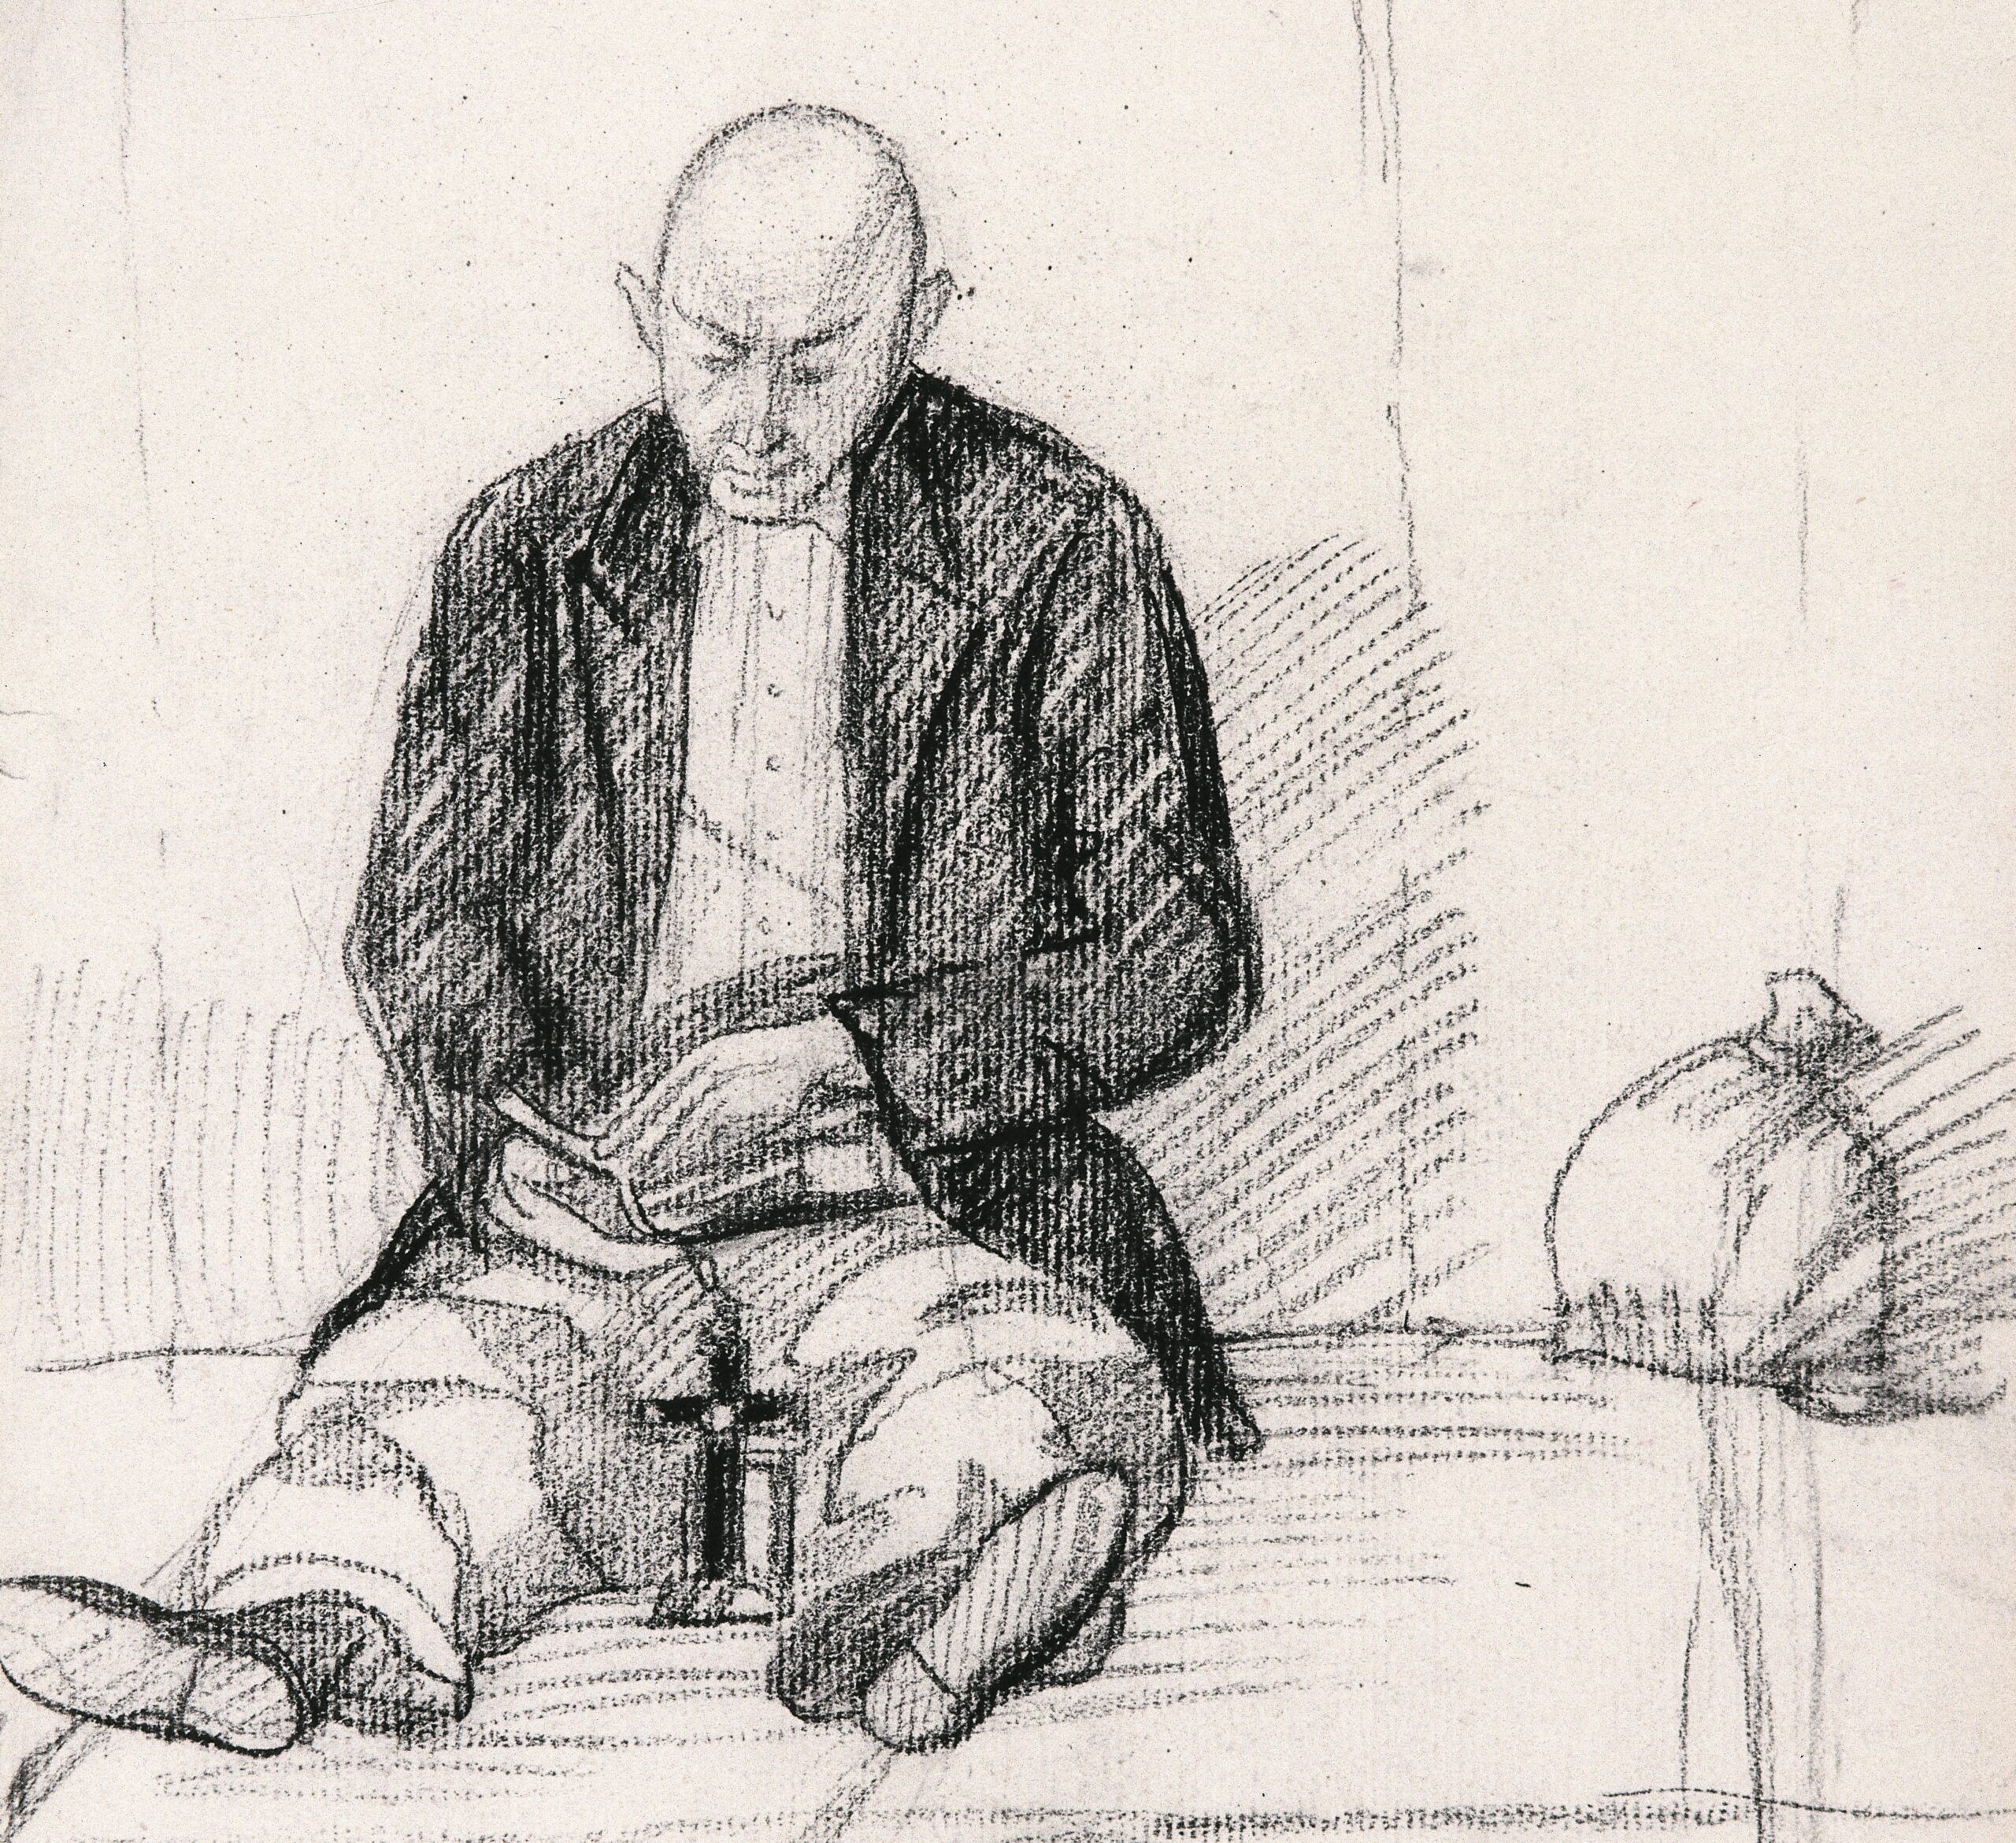 Dibujo de José Manaut titulado Uno con cruz, leyendo, Carabanchel, 1944. Carboncillo sobre papel.